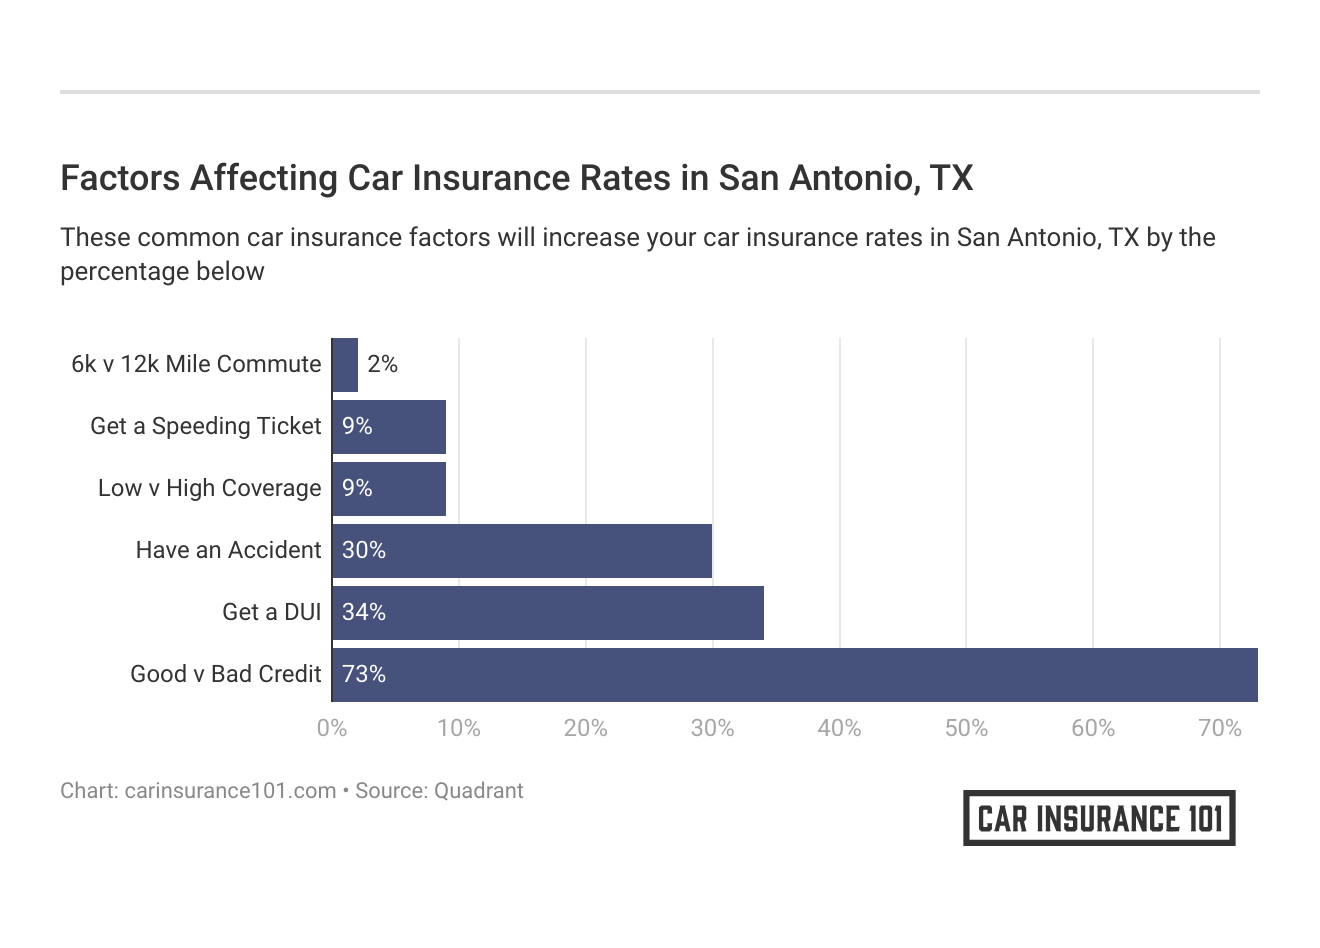 <h3>Factors Affecting Car Insurance Rates in San Antonio, TX</h3>